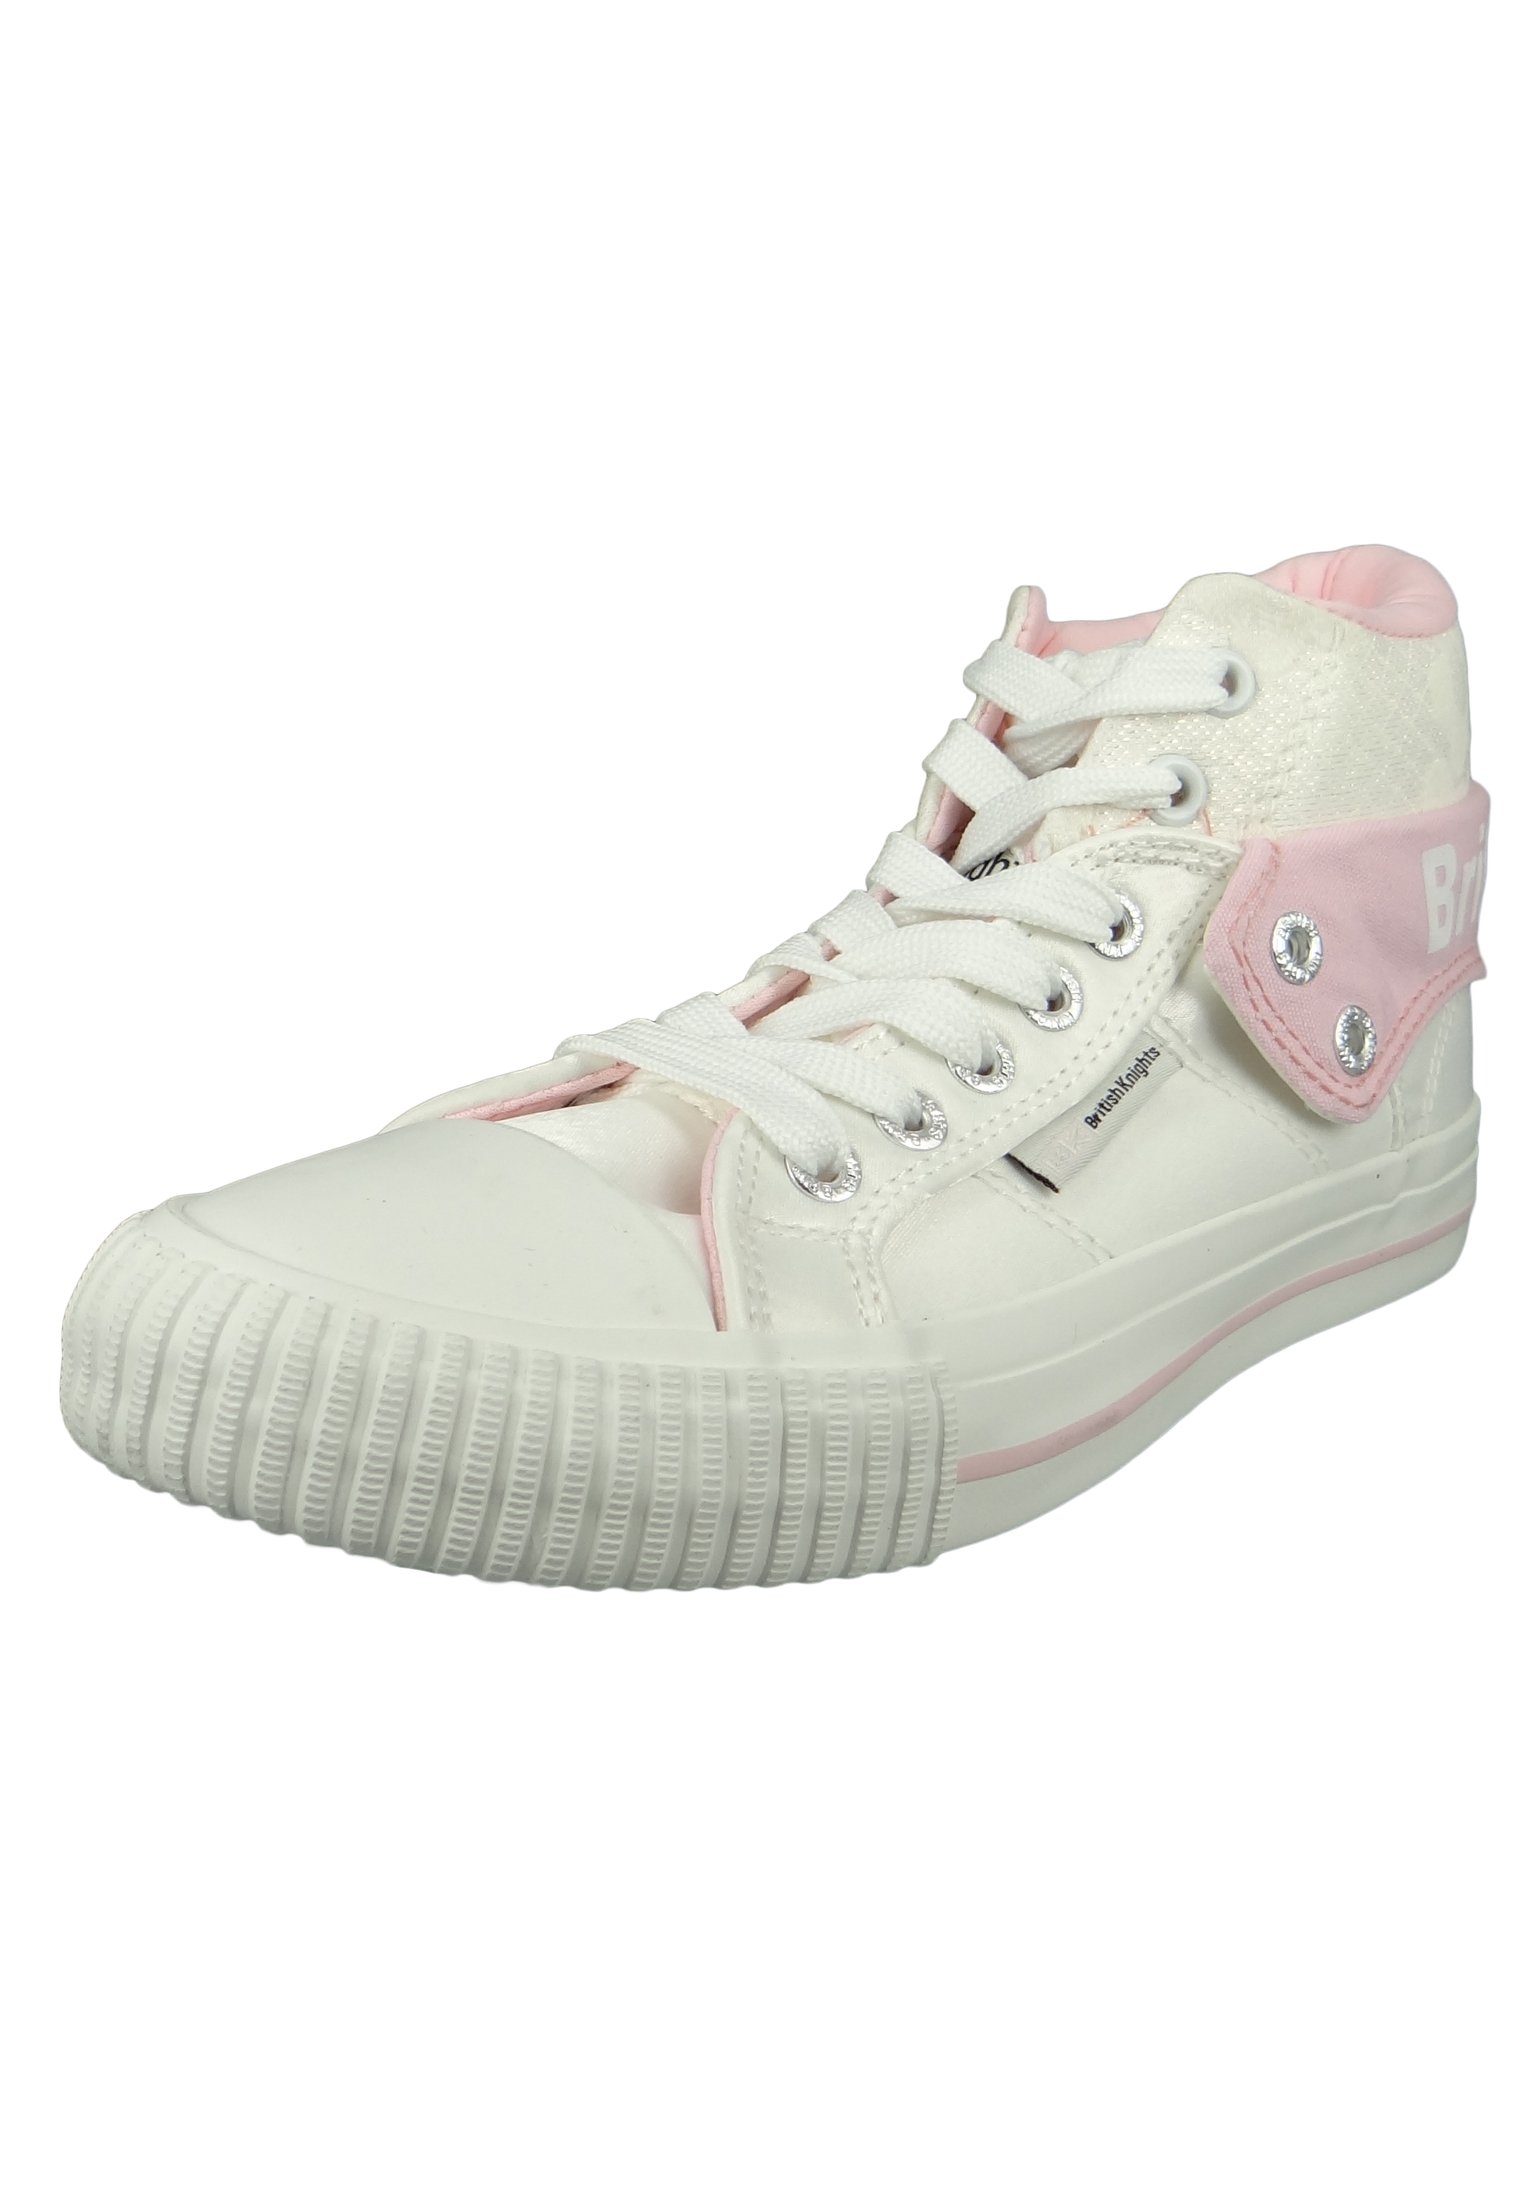 British Knights Pink White Flower B43-3709-02 Roco Sneaker